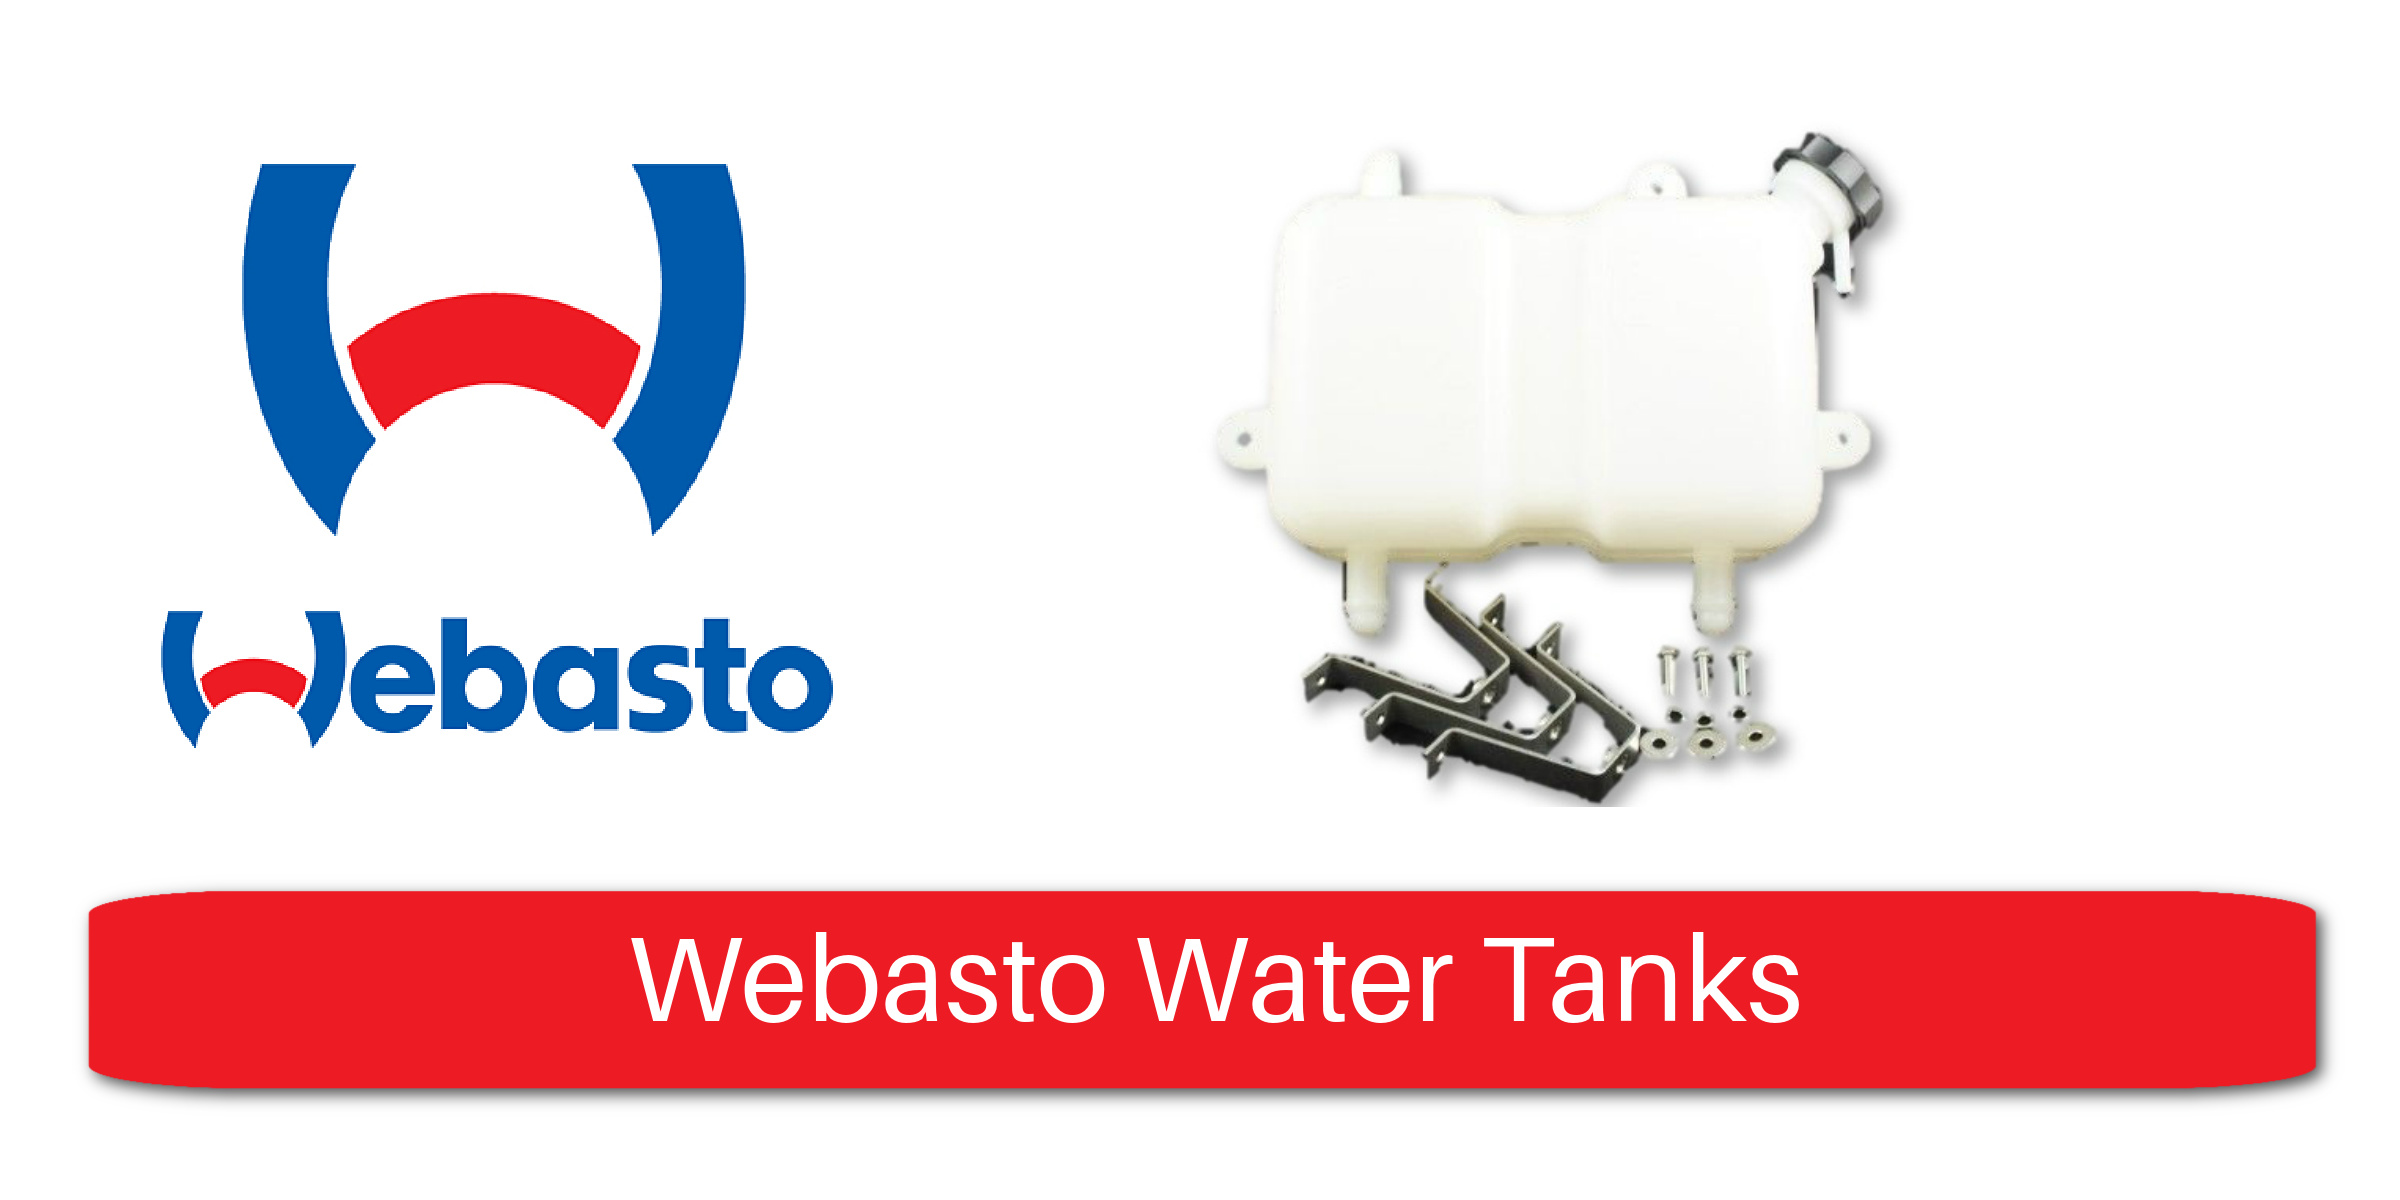 Webasto Water Tanks